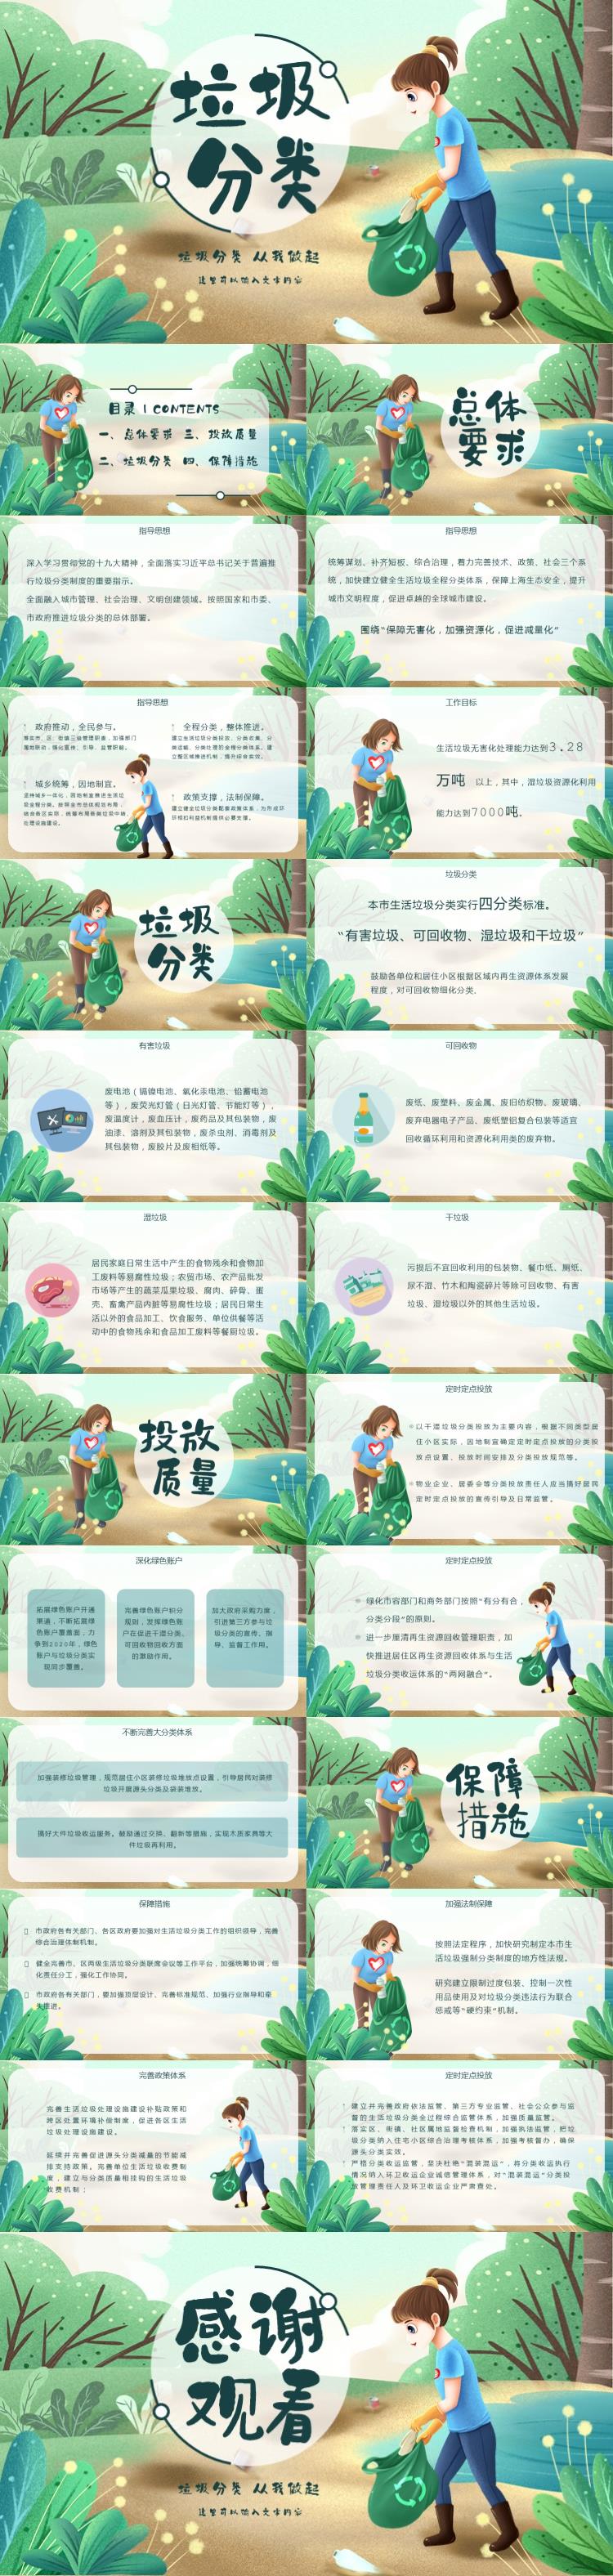 上海垃圾分类人人有责环保插画教育ppt模板下载